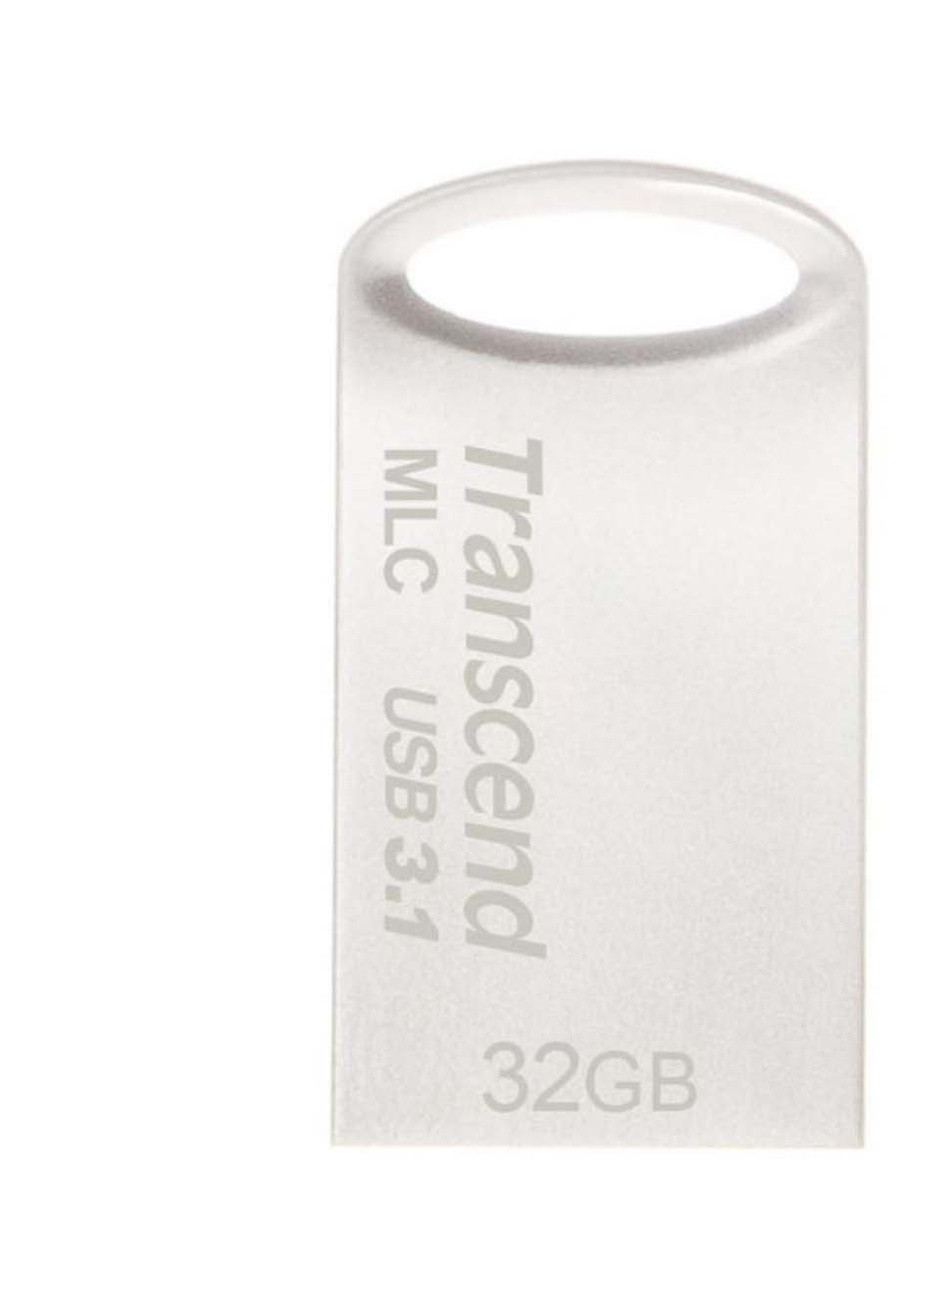 USB флеш накопитель (TS32GJF720S) Transcend 32gb jetflash 720 silver plating usb 3.1 (232750097)